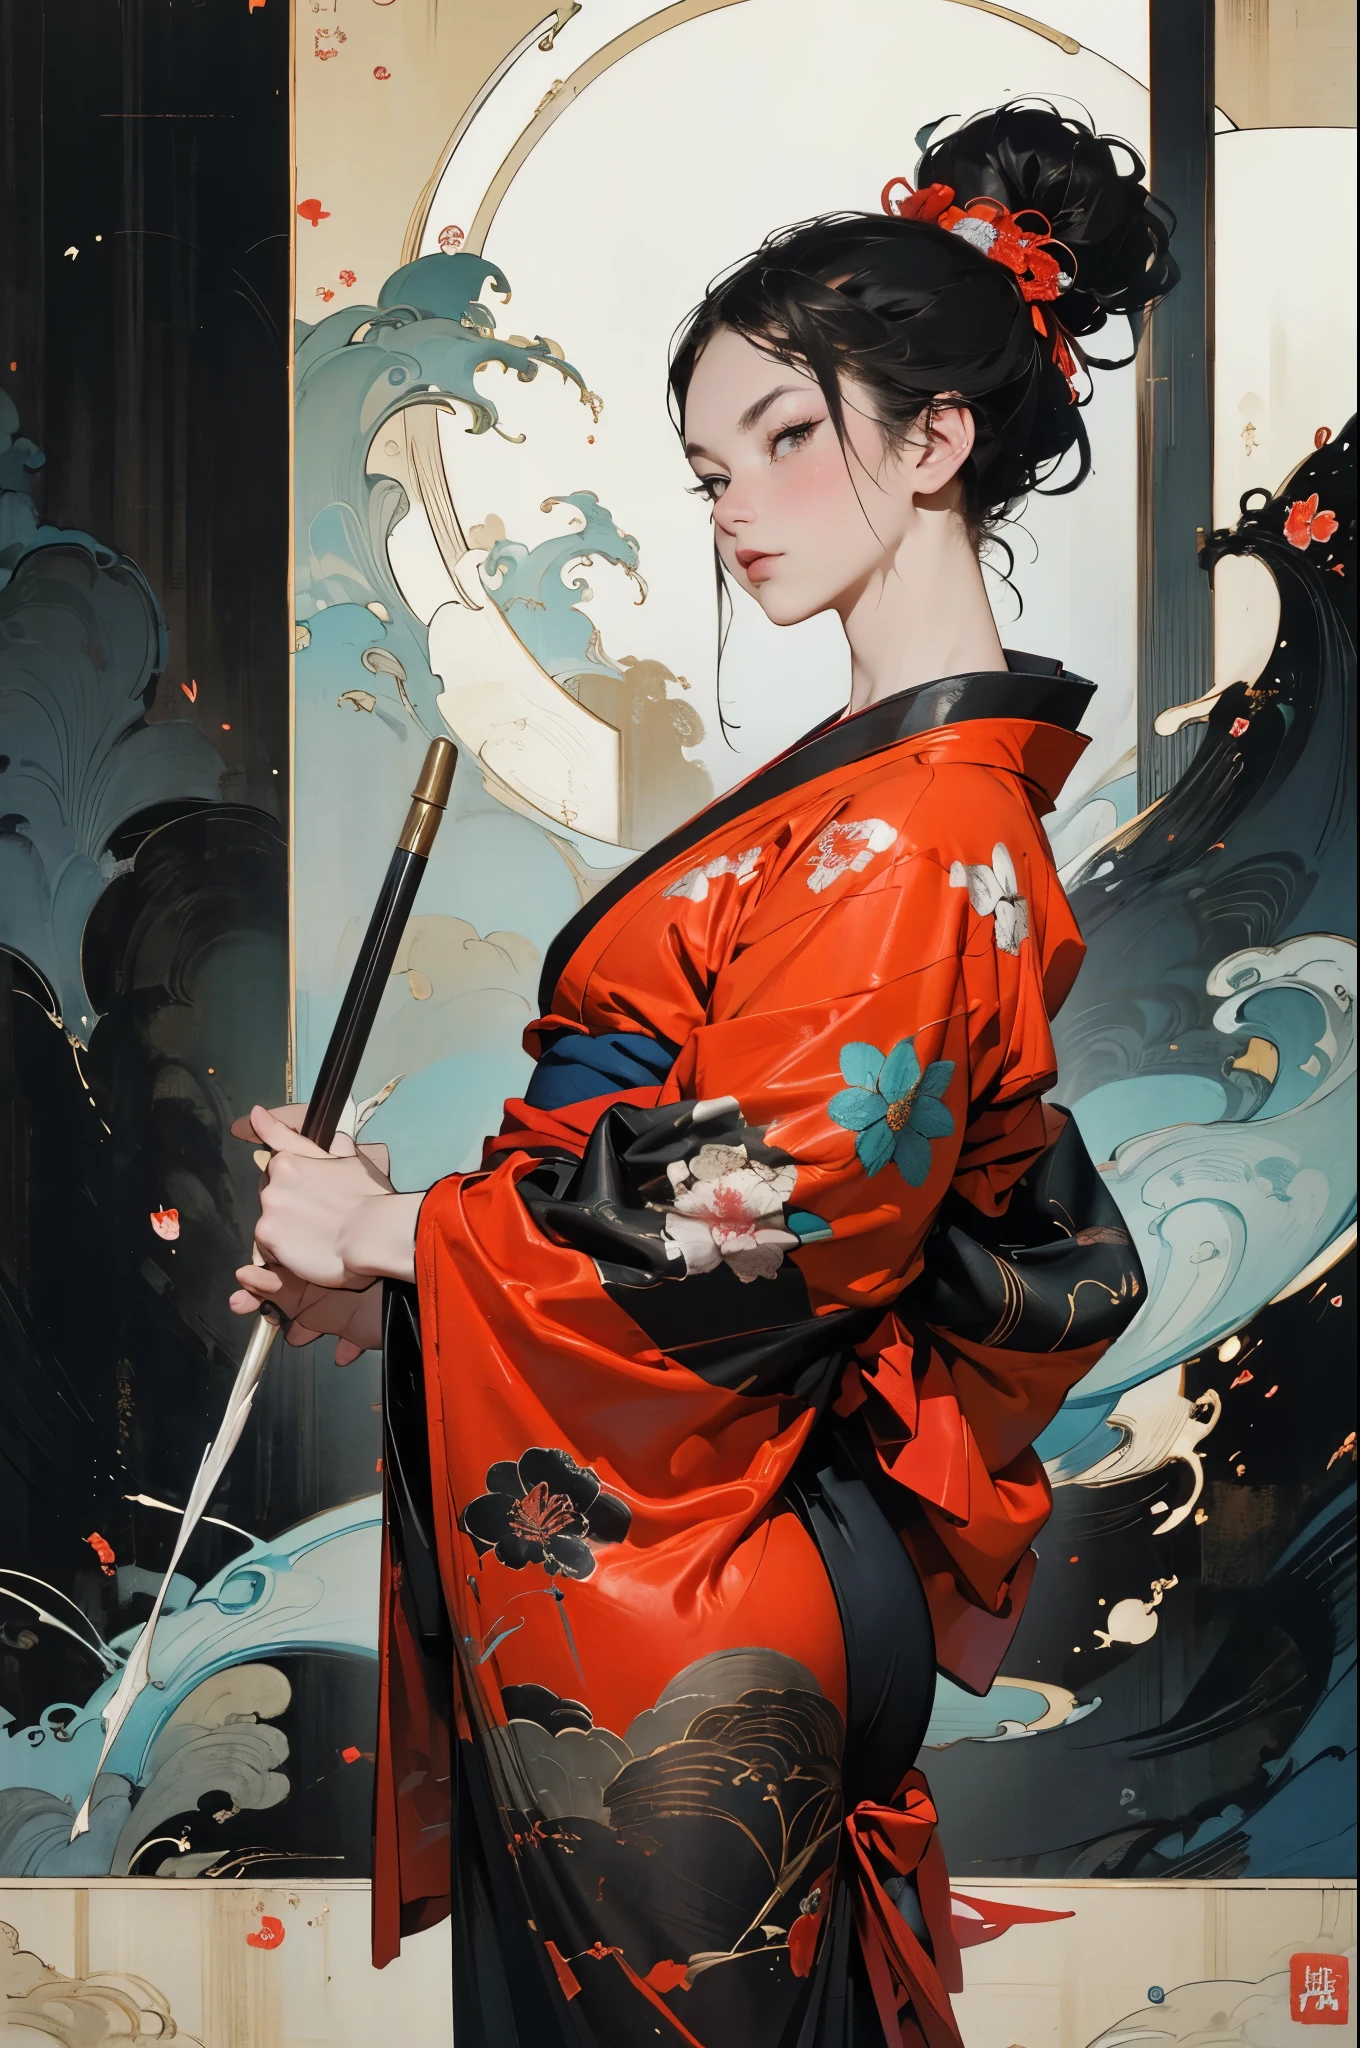 セクシーな戦士を待ってください, かわいらしい顔, おいしい会社, 魅惑的な姿, セクシーな開いた着物を着て. この作品は日本の水墨画を彷彿とさせる媒体で制作されている。....., 具有大胆的笔触和単色のカラーパレット. アーティスト&#39;見事な技術が画像の強さと力強さを表現します&#39;存在感，最高品質, 超高解像度で細部まで完璧に撮影. 着物の質感や複雑な模様は極めて精密に表現されている. 照明は慎重に設計されています，ドラマ性を高める, 深い影と繊細なハイライトが特徴です. 一般的な, この作品は優雅さと力強さを醸し出している, 伝統的な日本の美学と現代的な感覚を組み合わせた. 単色のカラーパレット, 詳細を組み合わせる, 視聴者を魅了し、夢中にさせる体験を創造する.